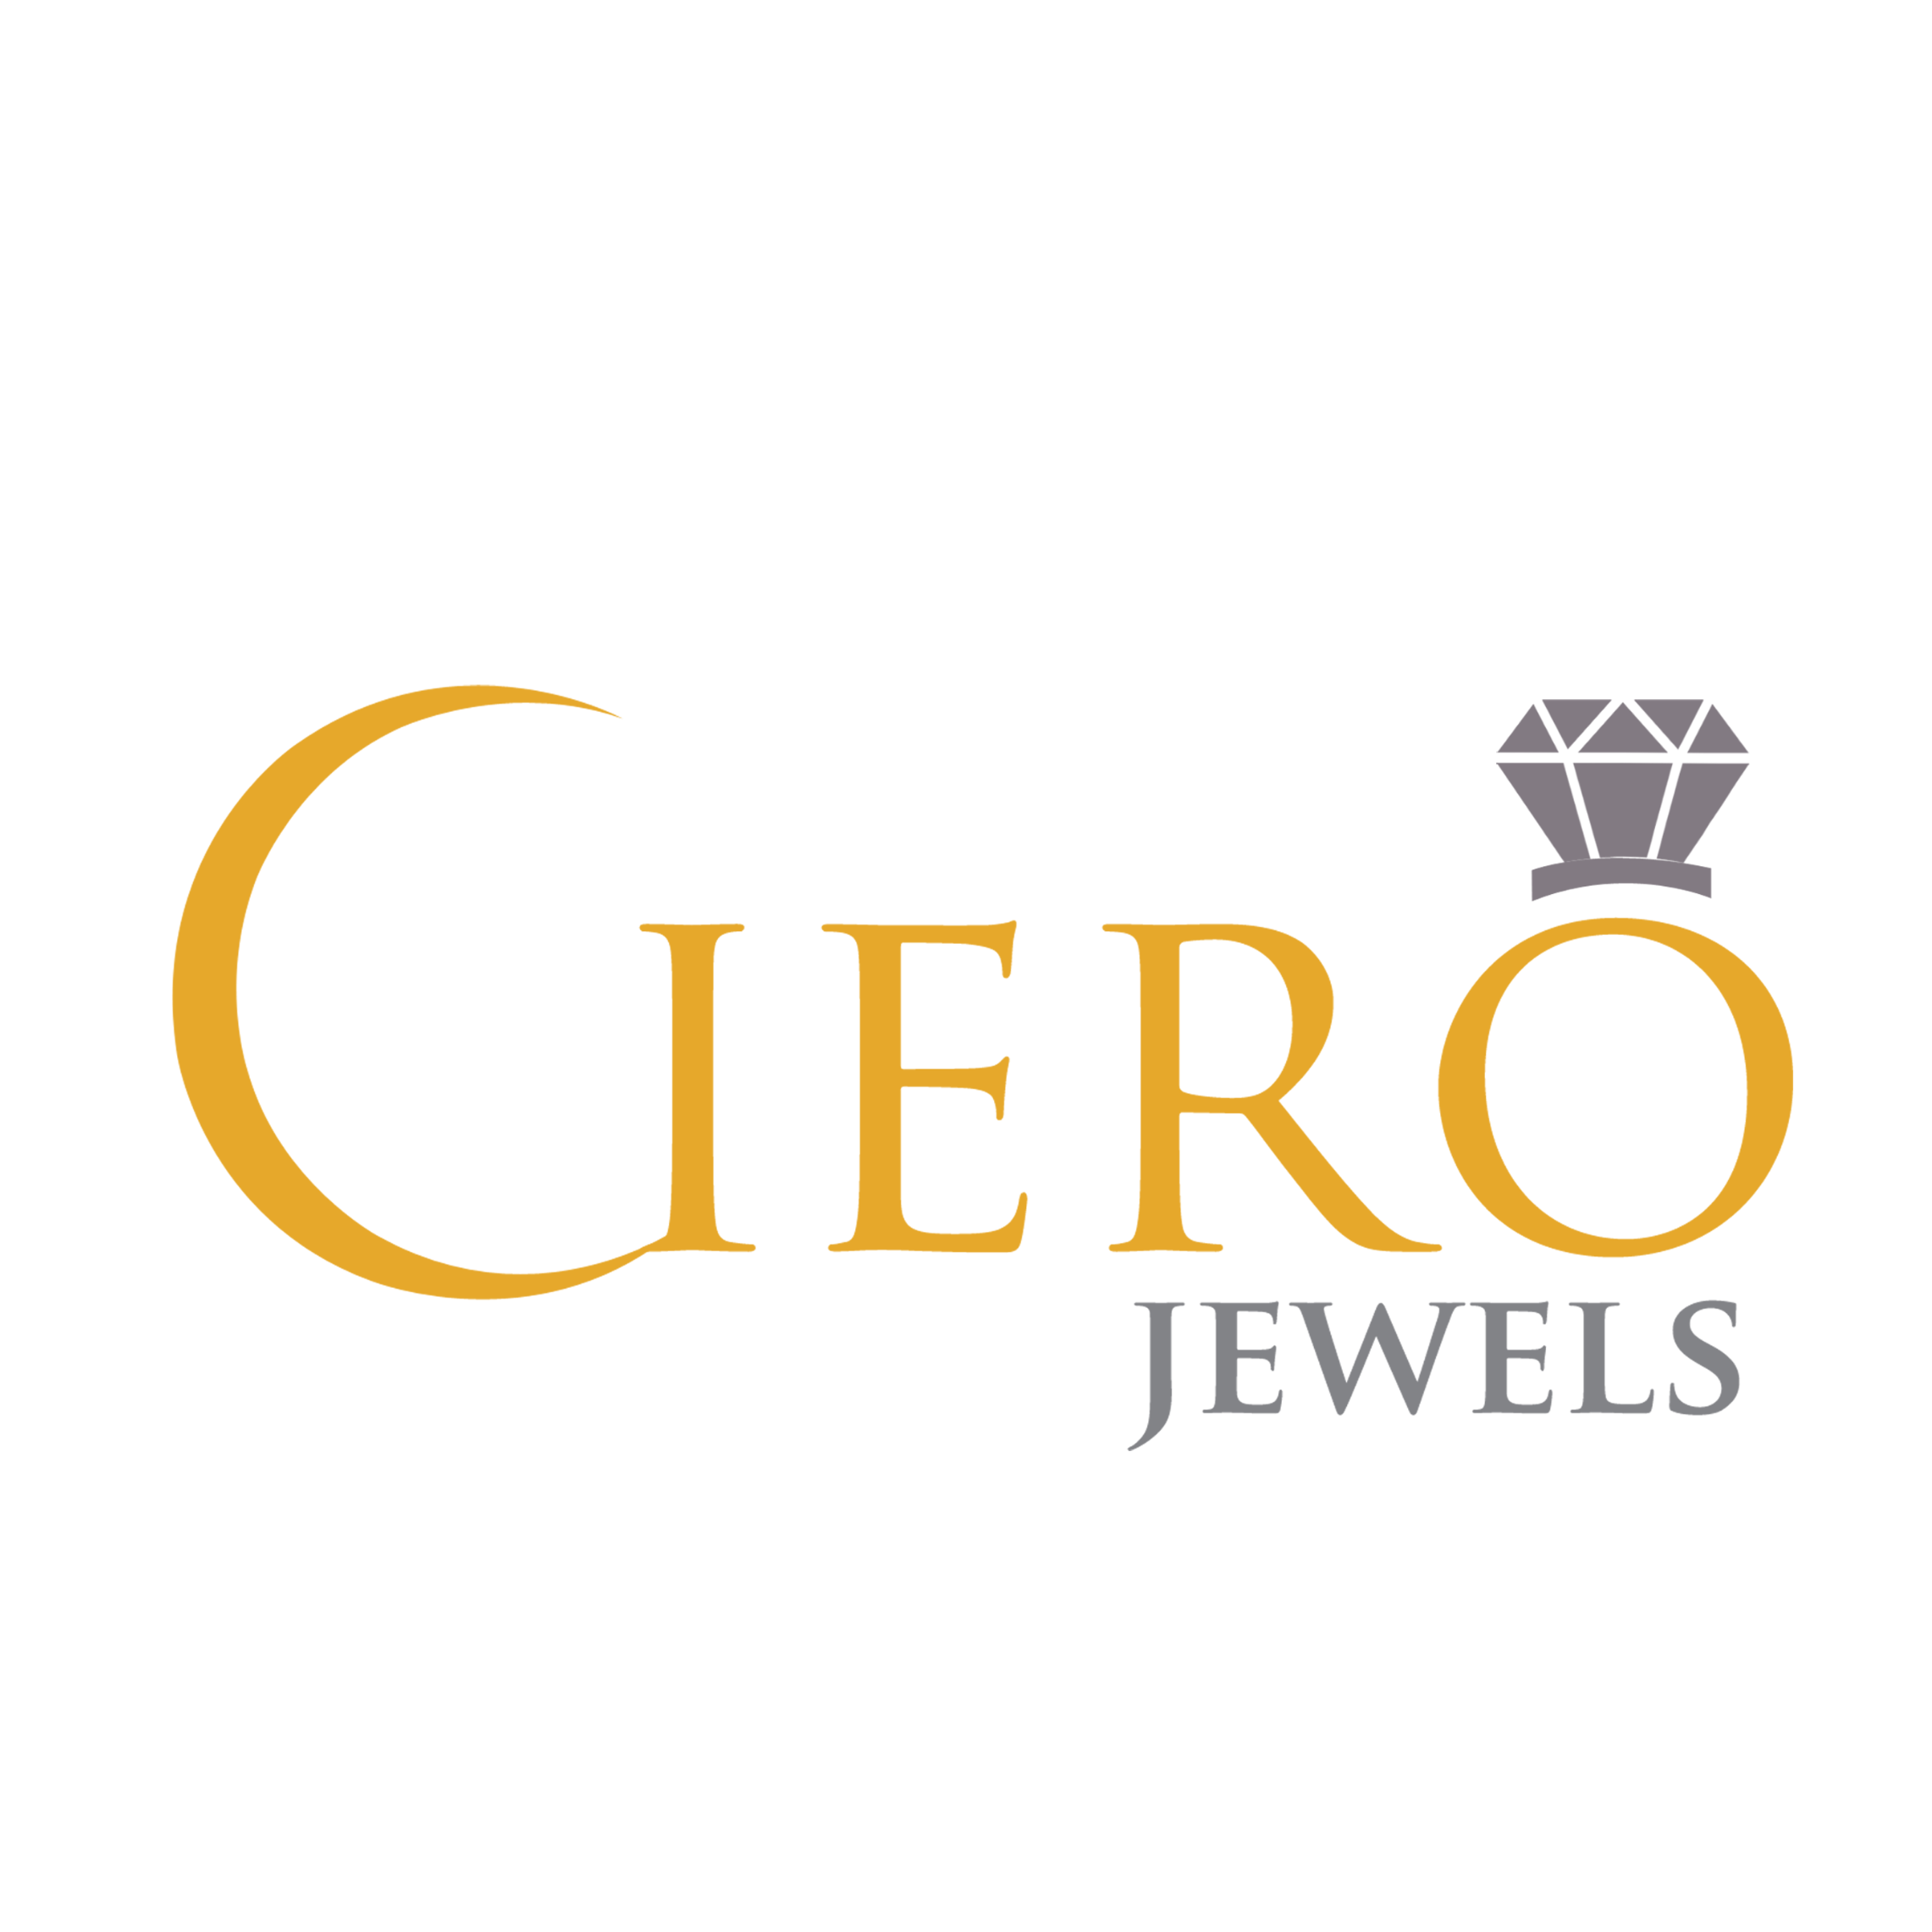 CieroJewels-Artificial Jewellery